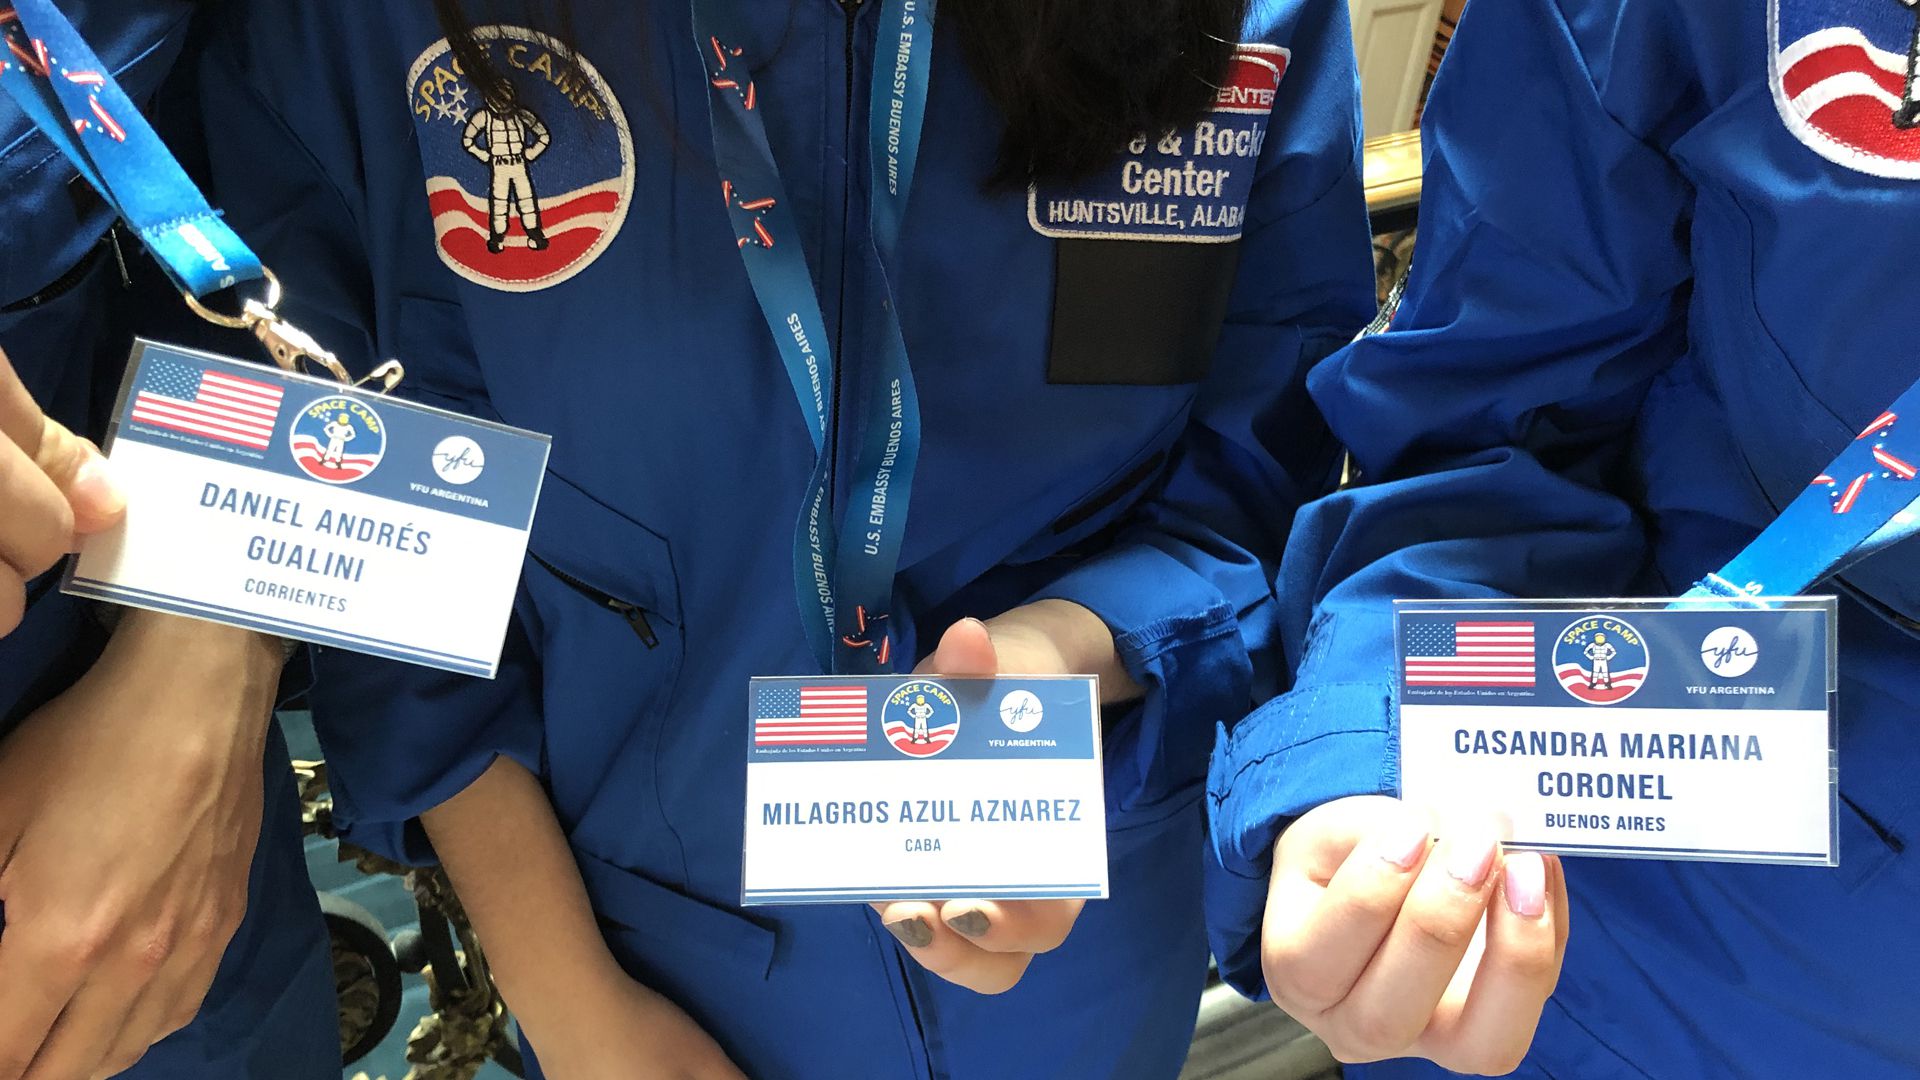 Las credenciales que muestran a algunos de los seleccionados para el campamento espacial